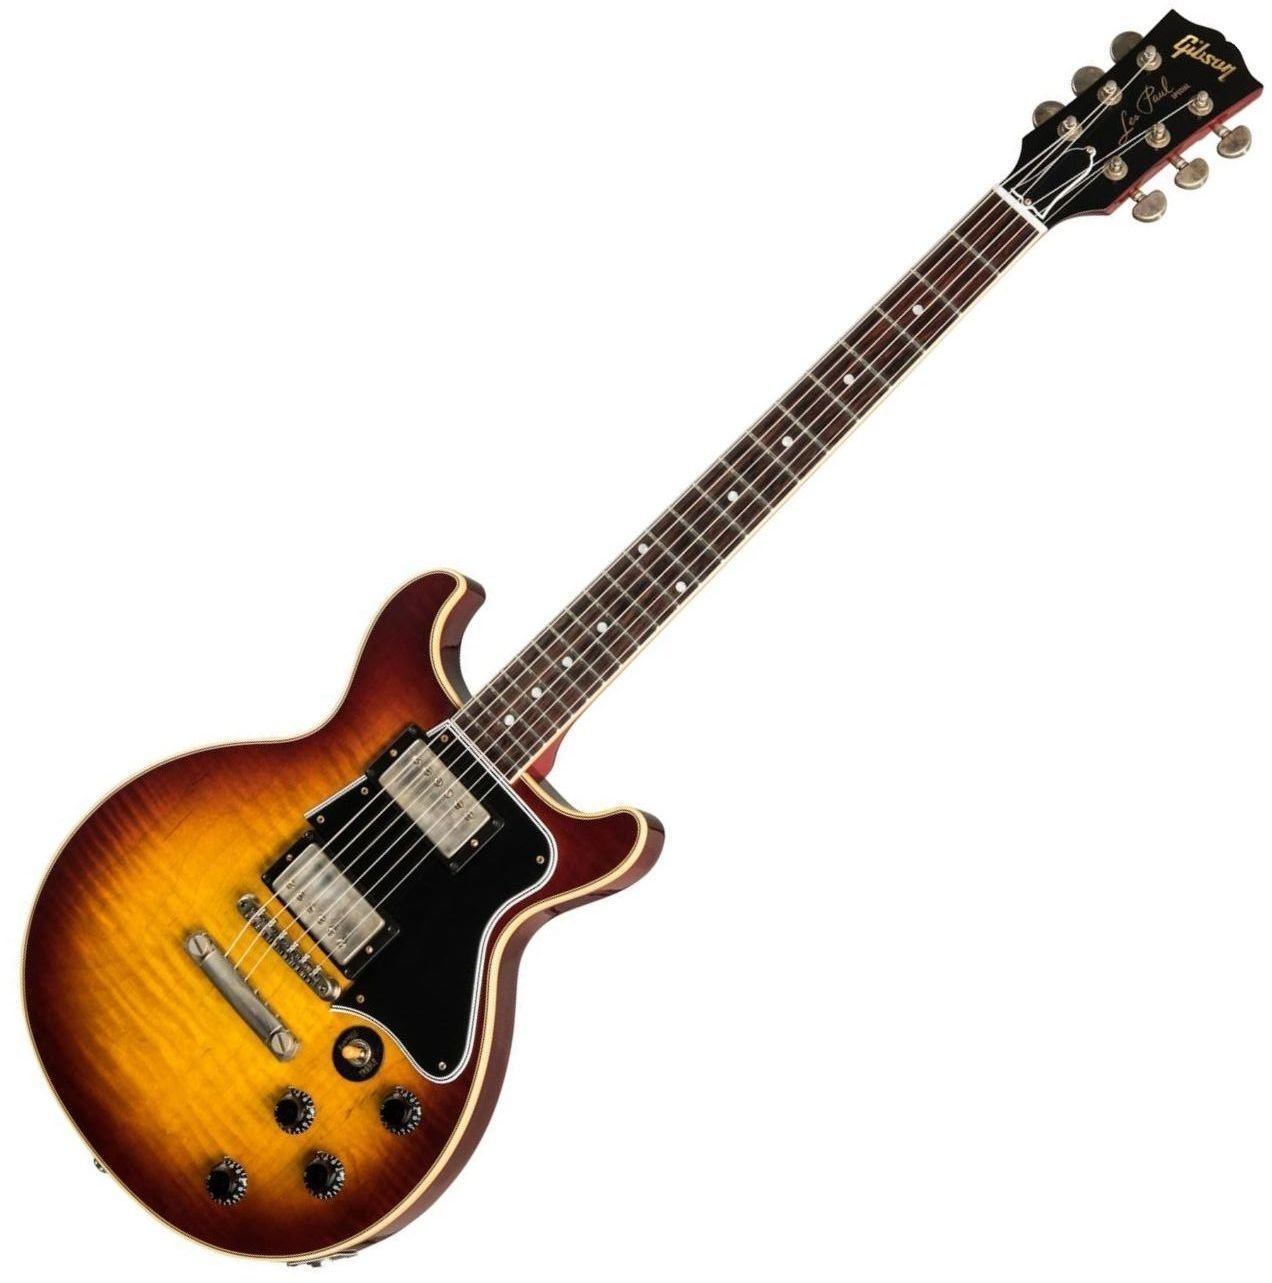 E-Gitarre Gibson Les Paul Special DC Figured Maple Top VOS Bourbon Burst